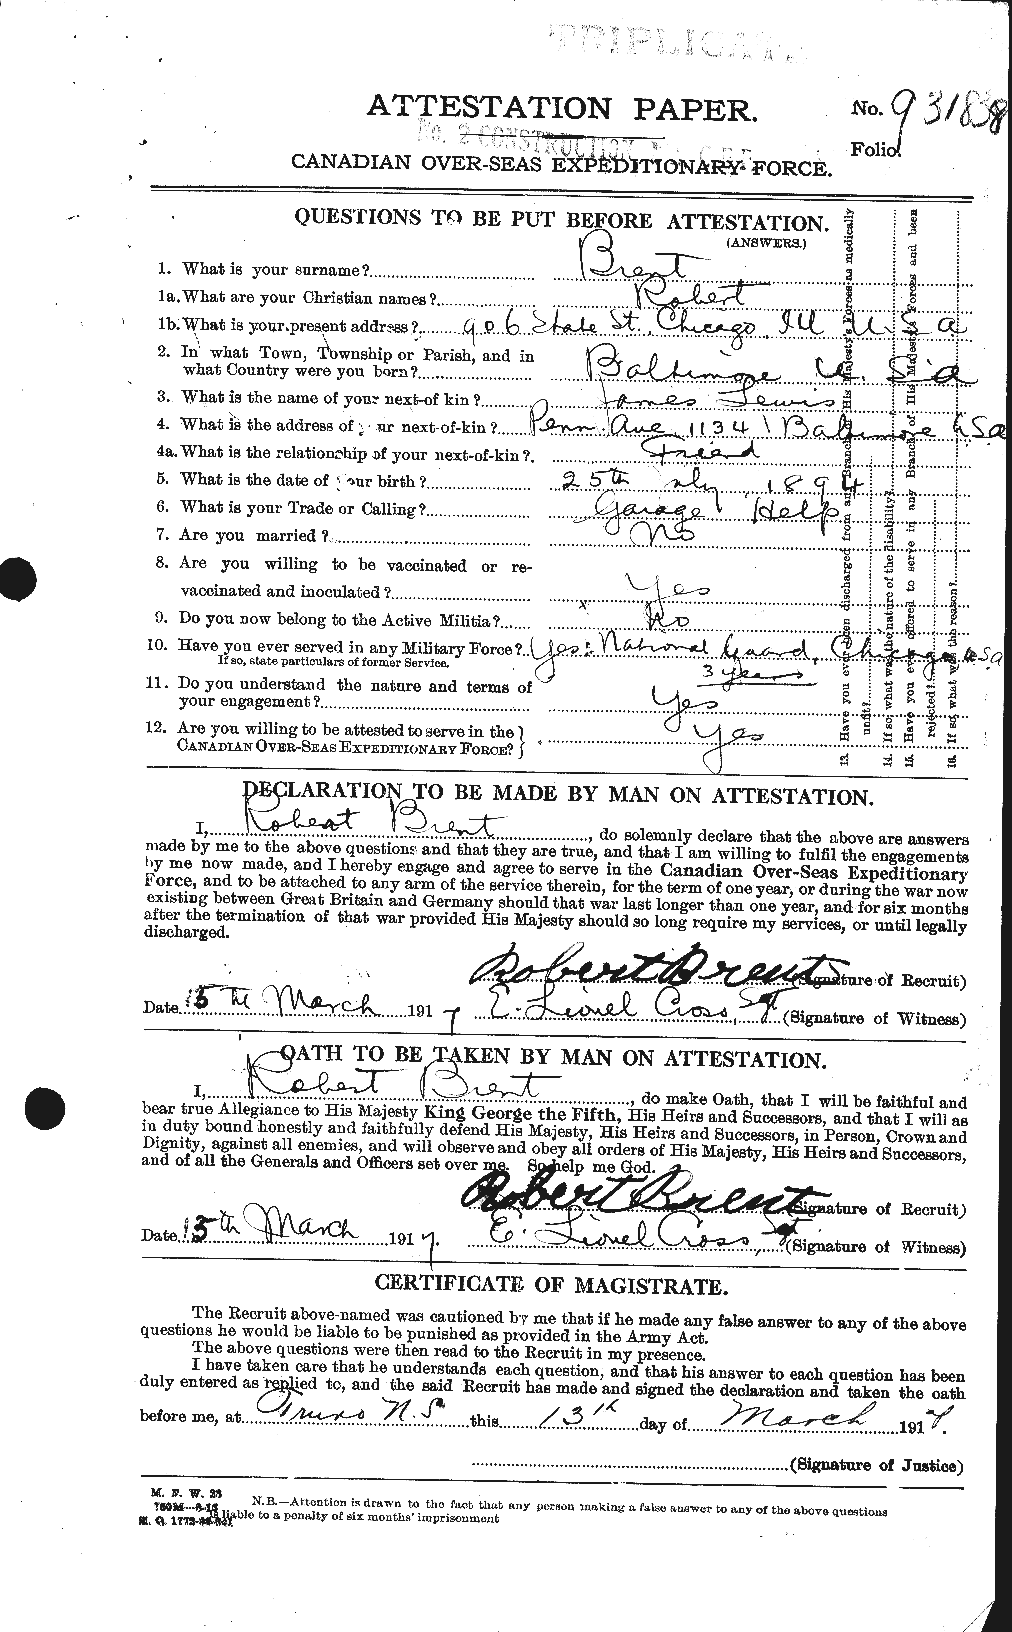 Dossiers du Personnel de la Première Guerre mondiale - CEC 260241a